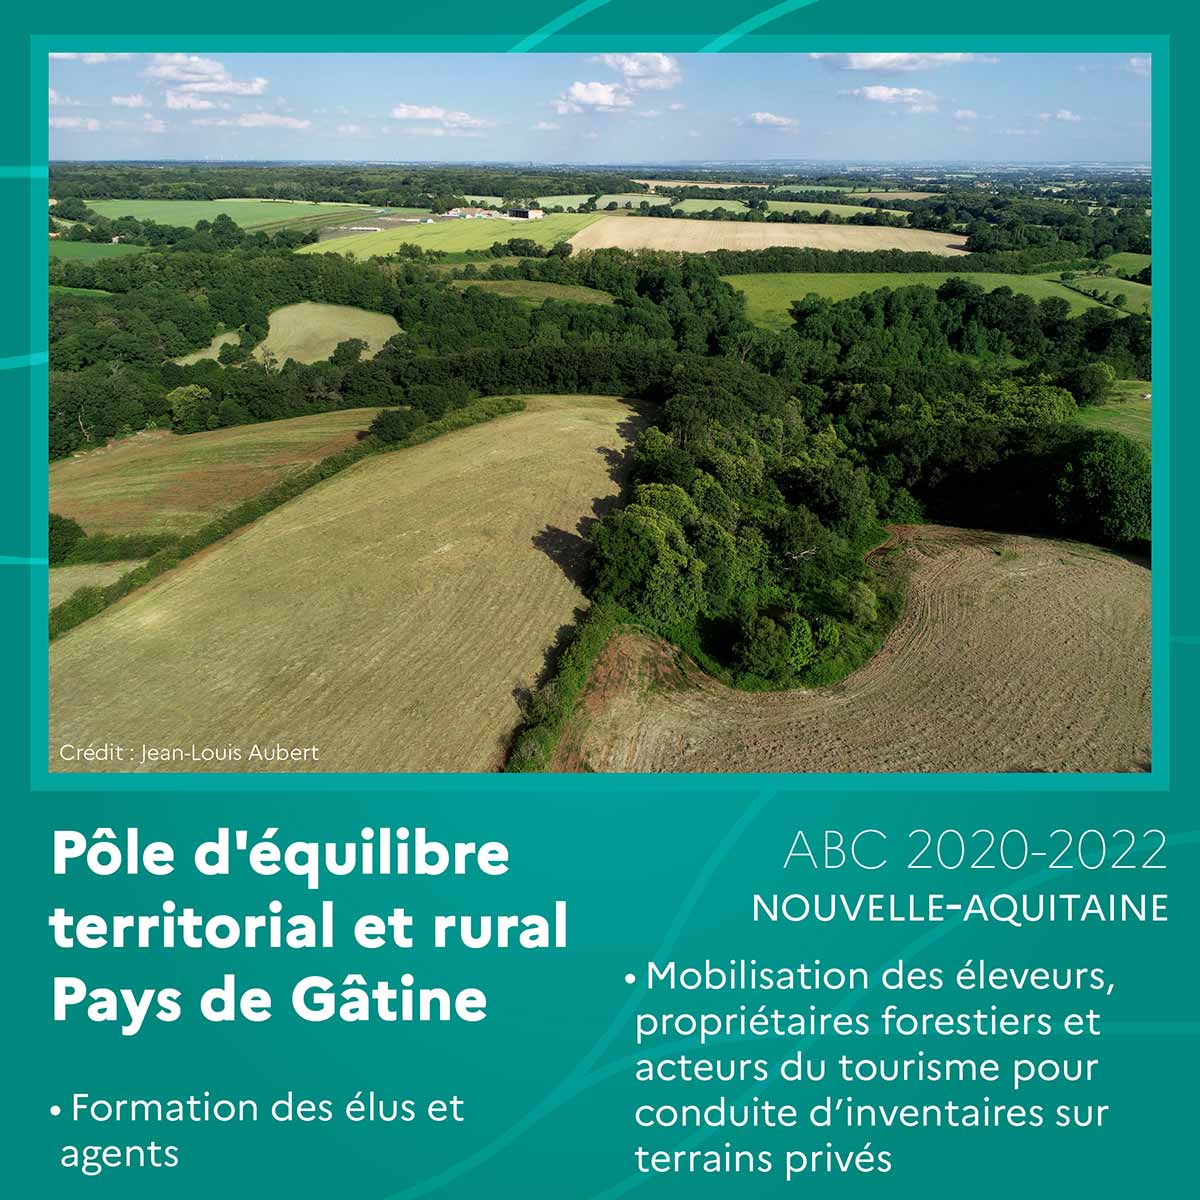 Pôle d’équilibre territorial et rural Pays de Gâtine (Nouvelle-Aquitaine)